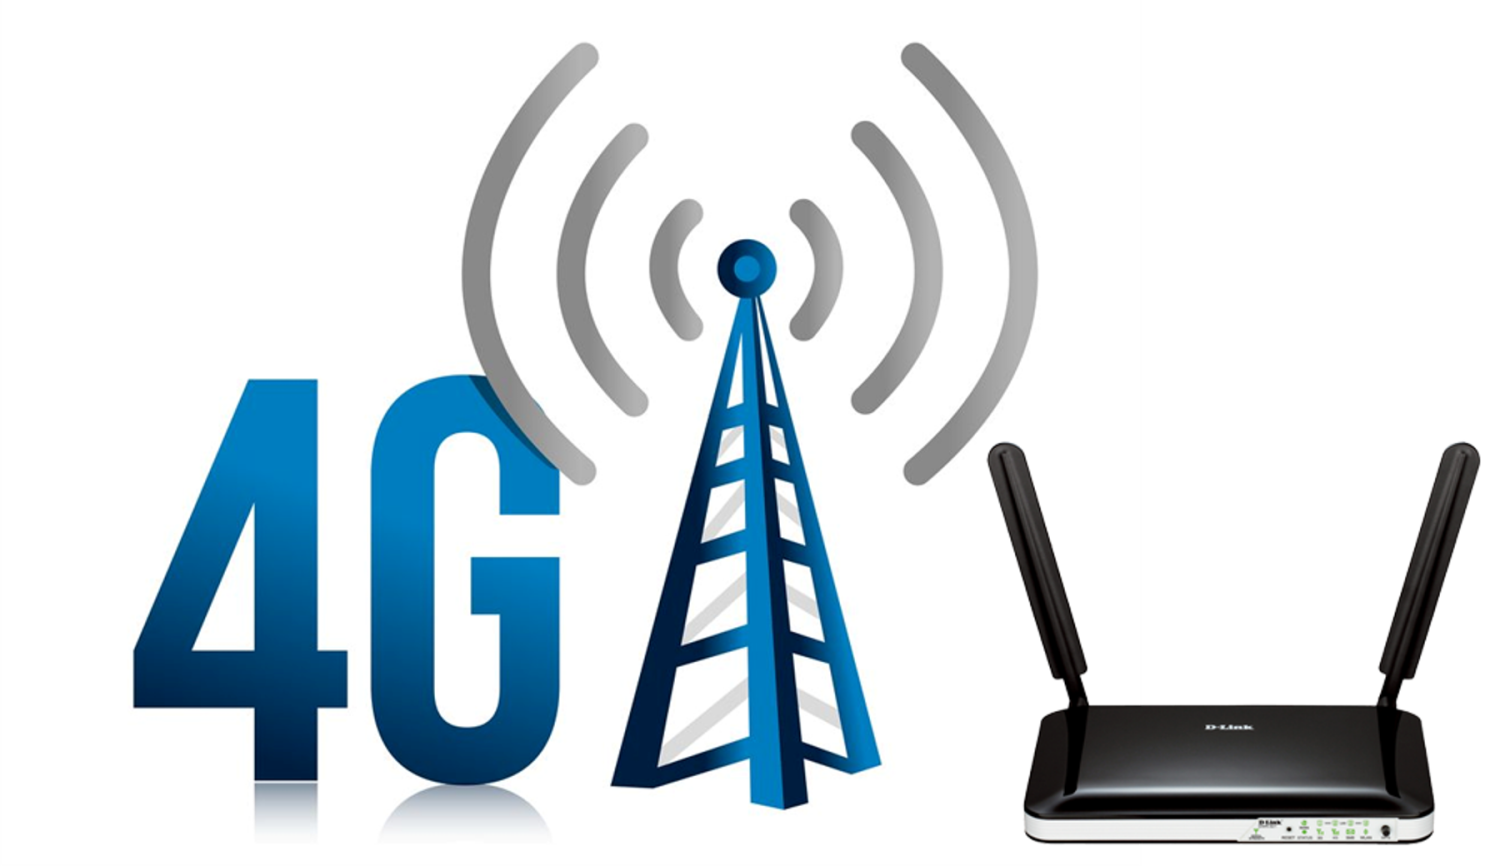 Сети сотовой связи 4g. 4g LTE. 3g 4g LTE device. Мобильная сеть 4g (WIMAX va LTE).